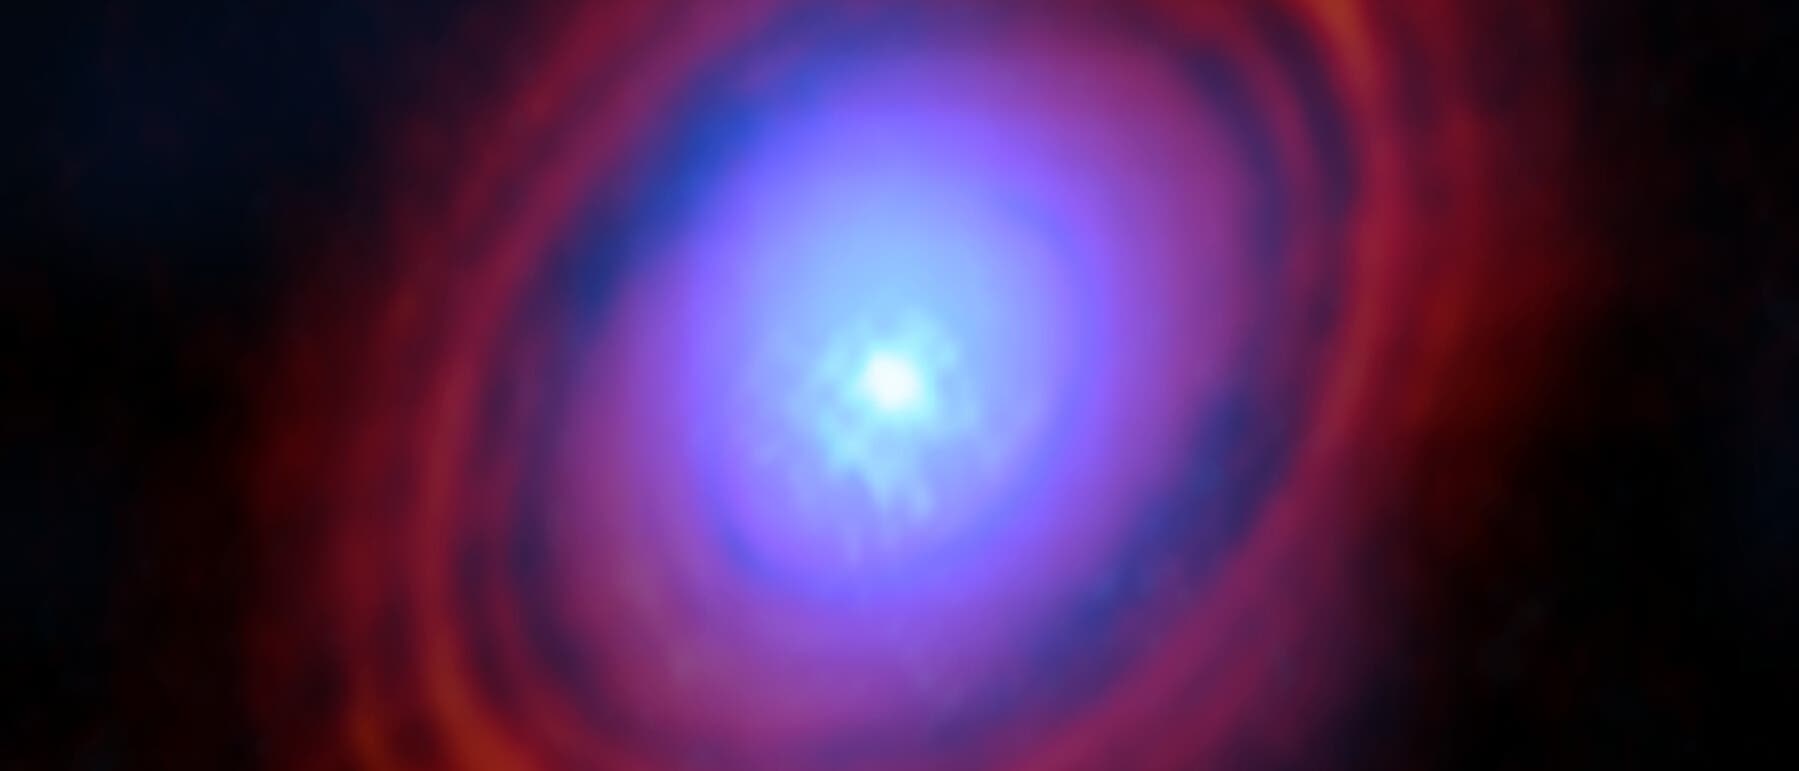 Falschfarbenbild der Scheibe um den Stern HL Tauri. Man erkennt ringförmig angeordnete Lücken in der roten Scheibe aus Staub, während der Wasserdampf, dargestellt in blau, sich eher im Zentrum konzentriert.